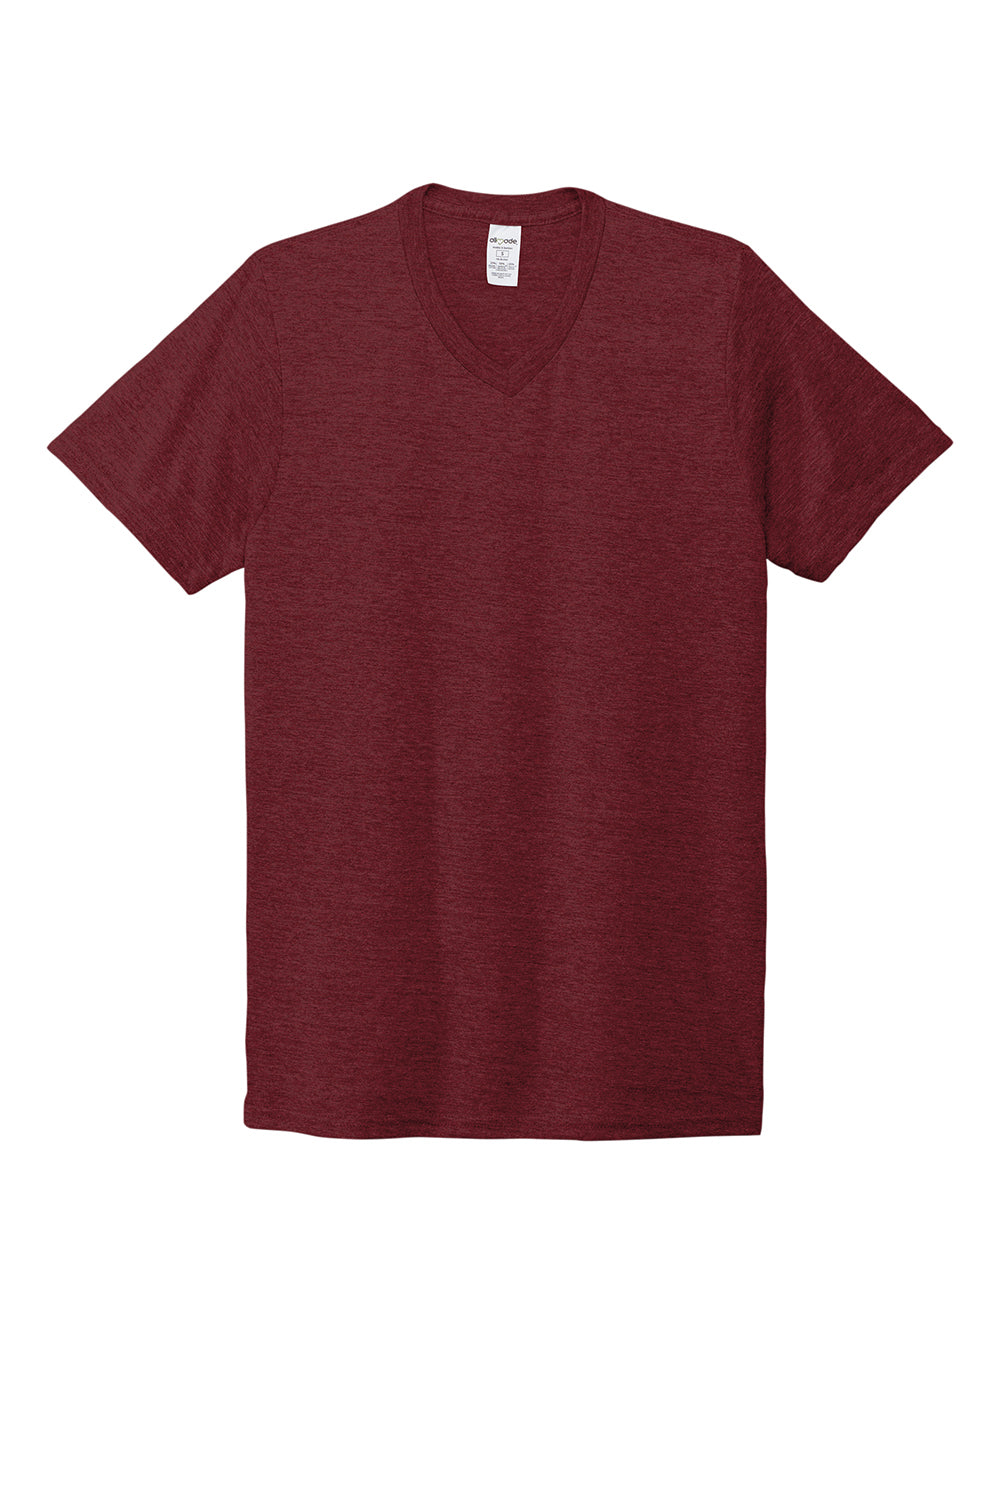 Allmade AL2014 Mens Short Sleeve V-Neck T-Shirt Vino Red Flat Front